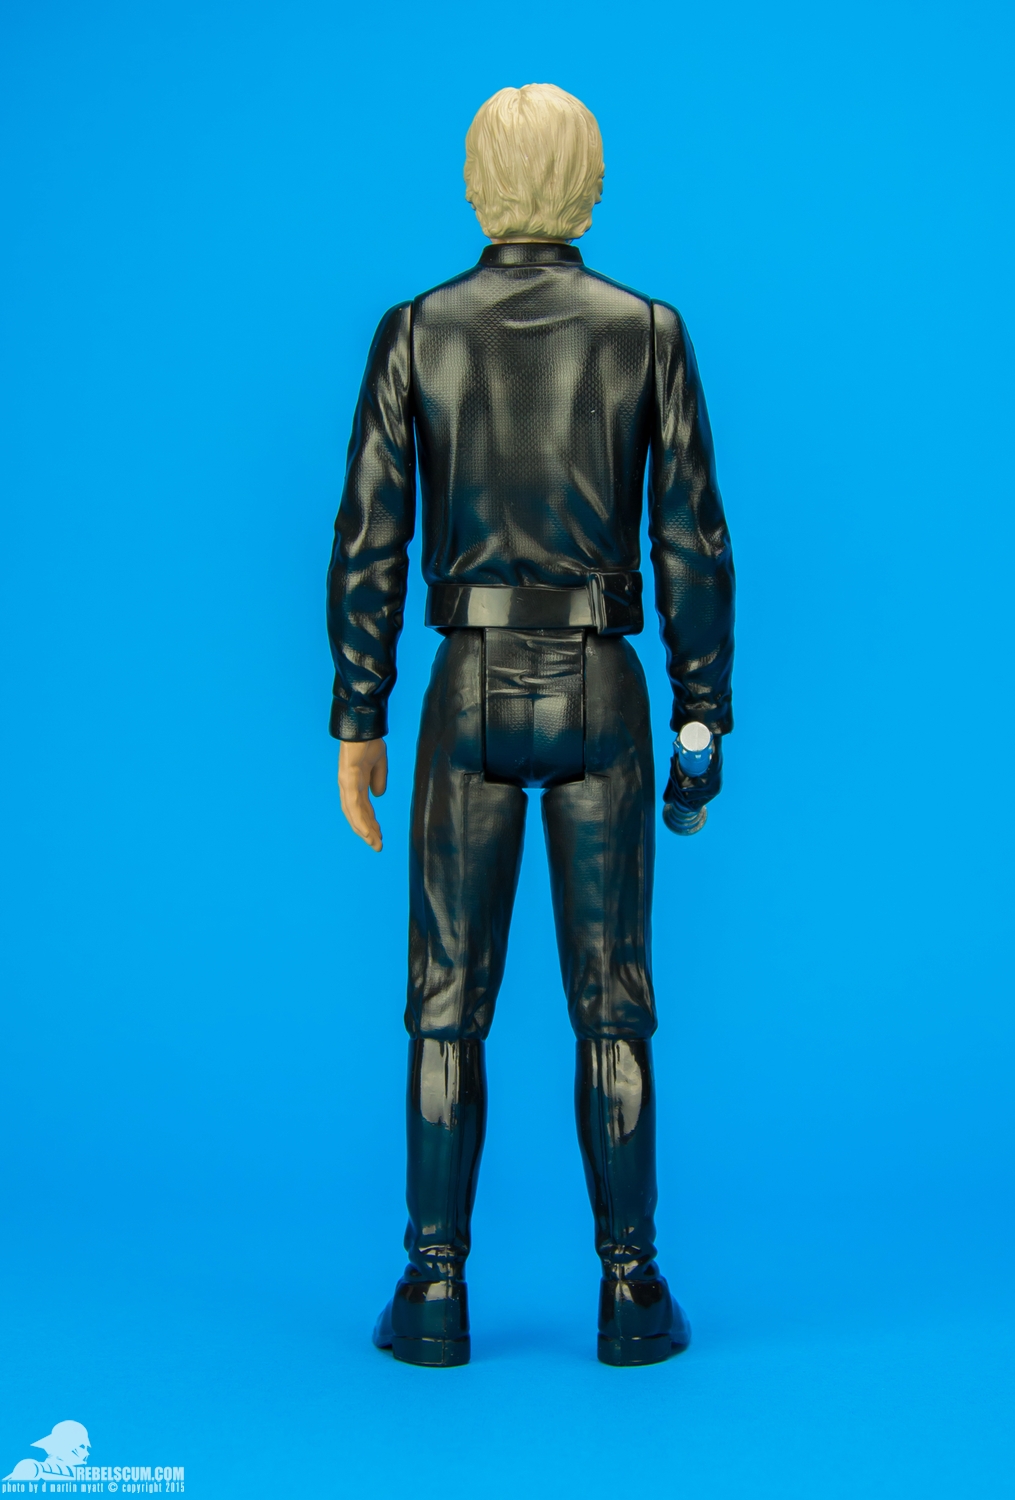 Luke-Skywalker-2014-Star-Wars-12-Inch-Figure-004.jpg